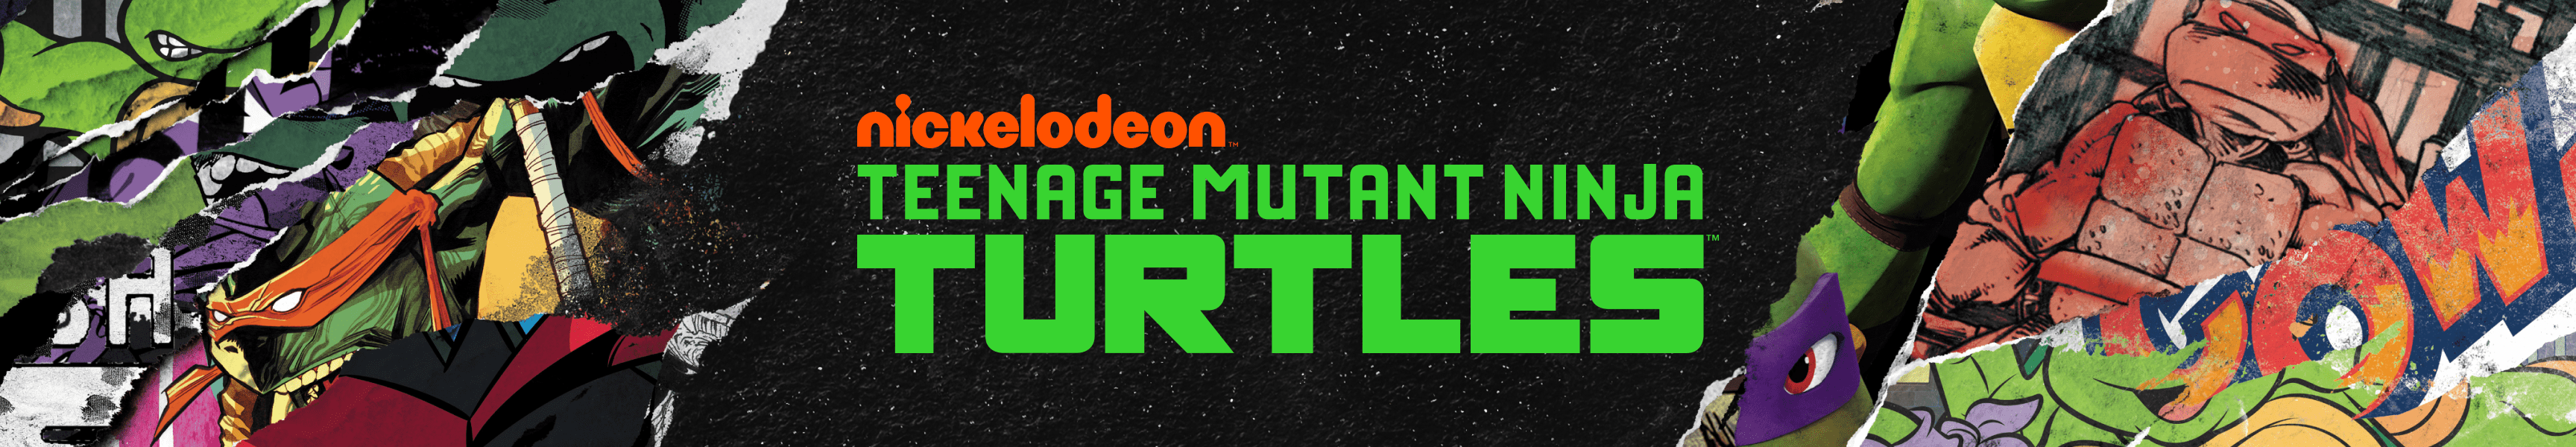 Teenage Mutant Ninja Turtles Herren-Accessoires